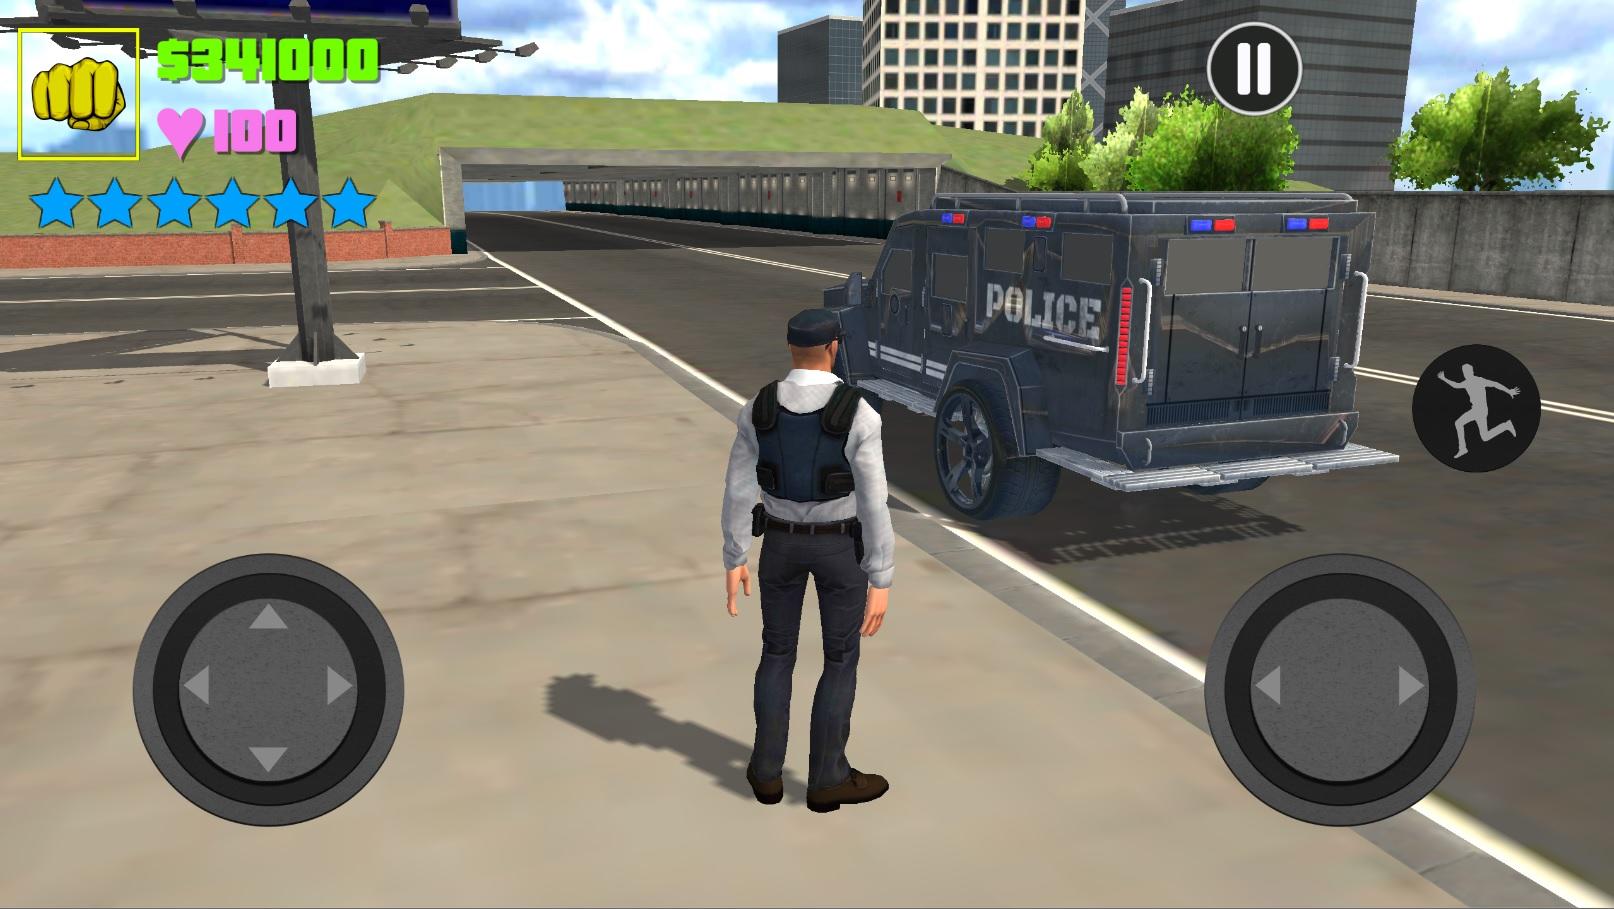 Screenshot 1 of 미국 기갑 경찰 트럭 운전: 자동차 게임 2021 